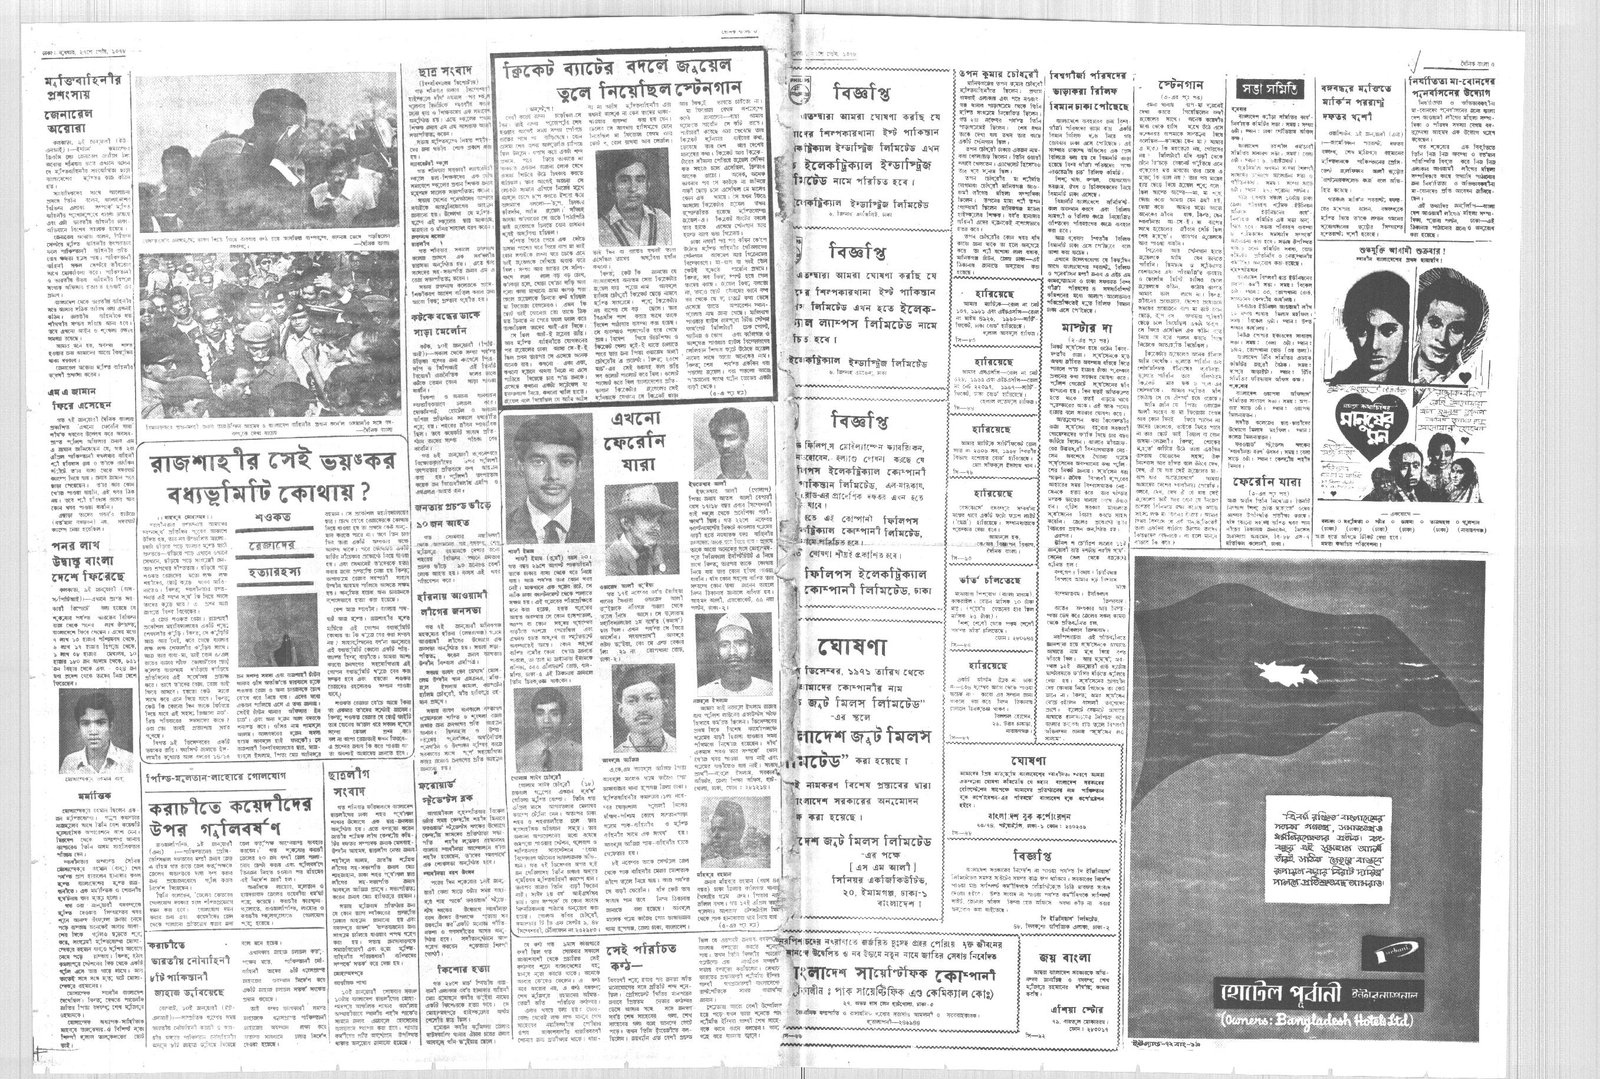 12JAN1972-DAINIK BANGLA-Regular-Page 3 and 6